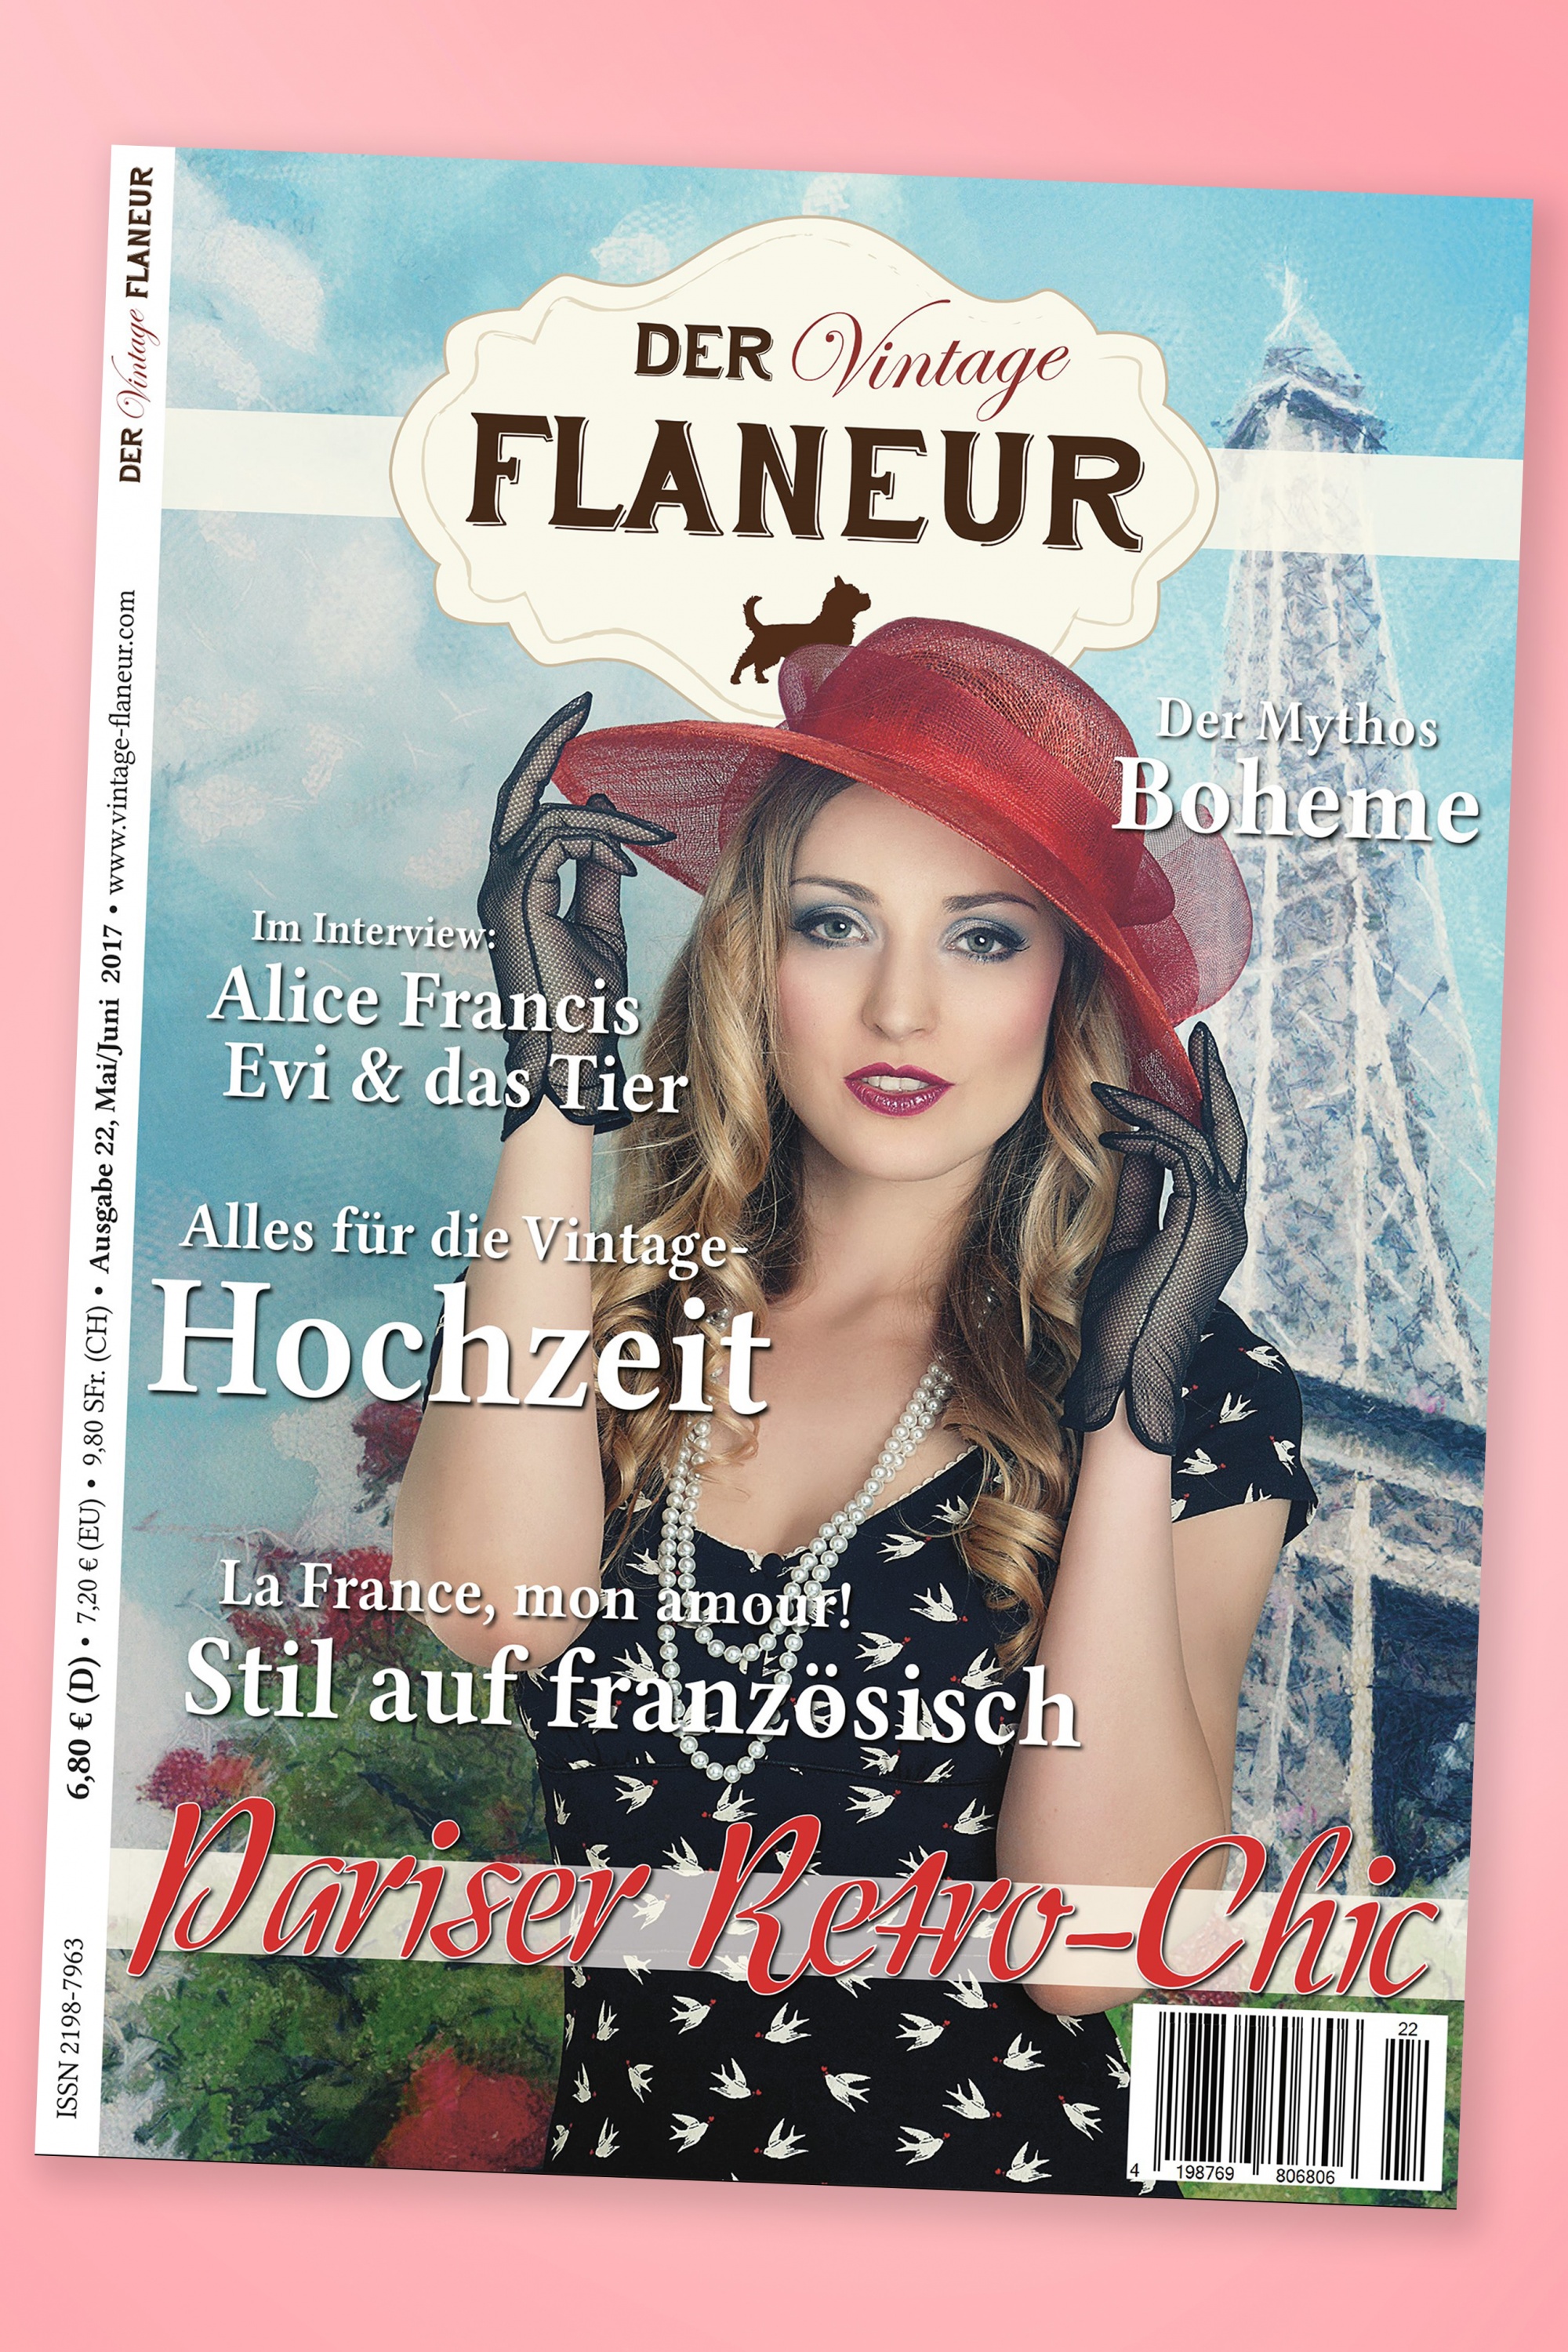 Der Vintage Flaneur - Der Vintage Flaneur Uitgave 22, 2017